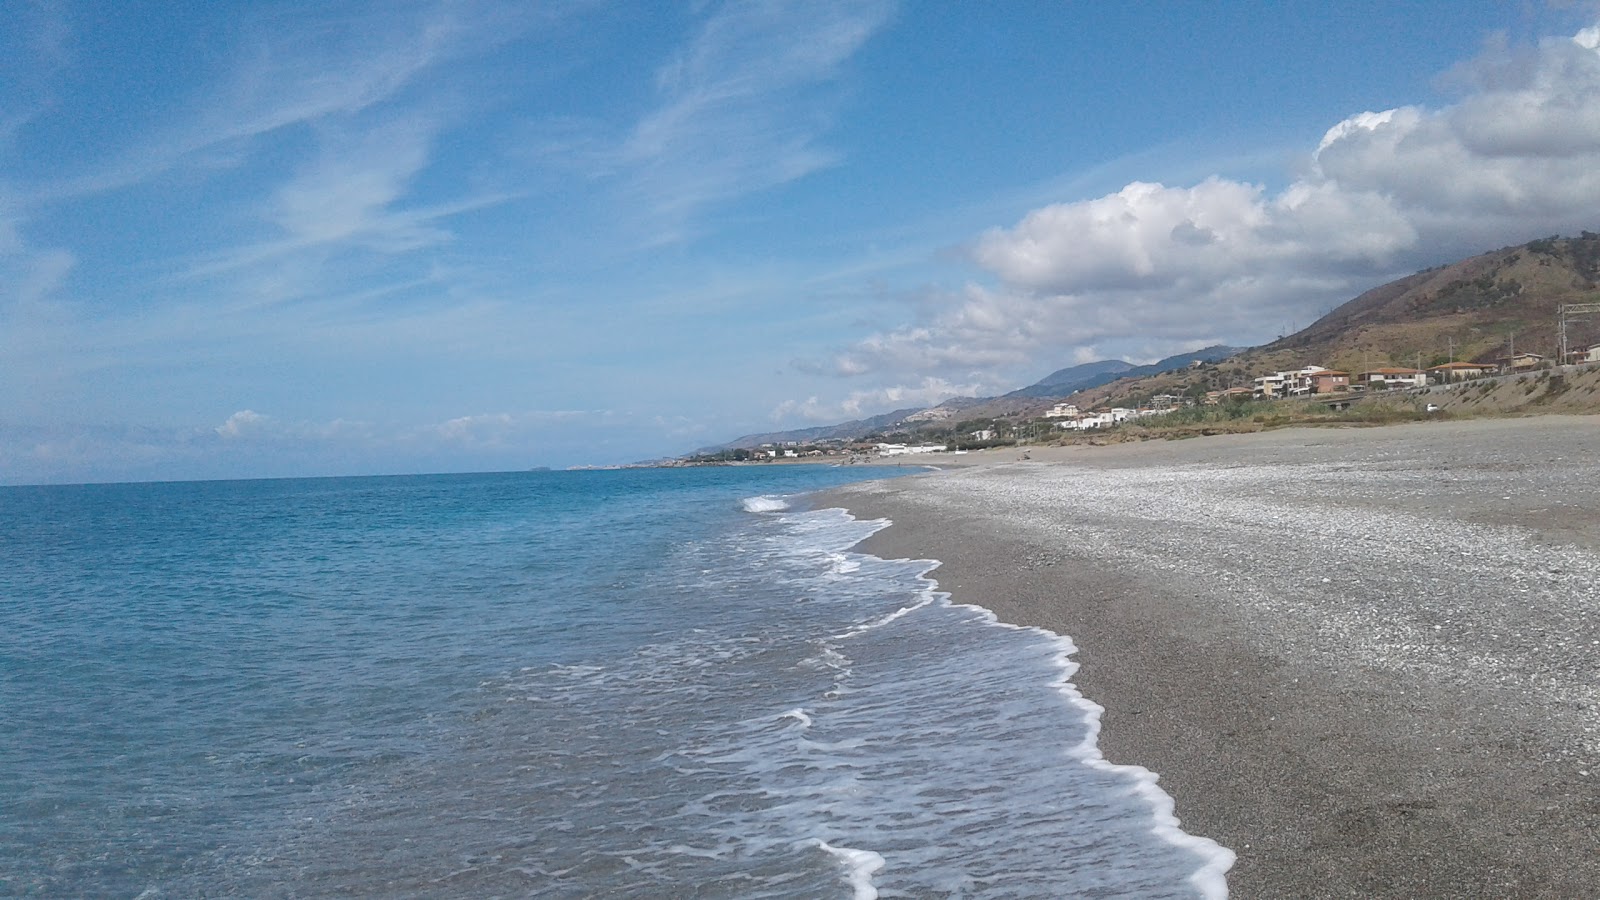 Sparvasile beach II'in fotoğrafı gri kum ve çakıl yüzey ile